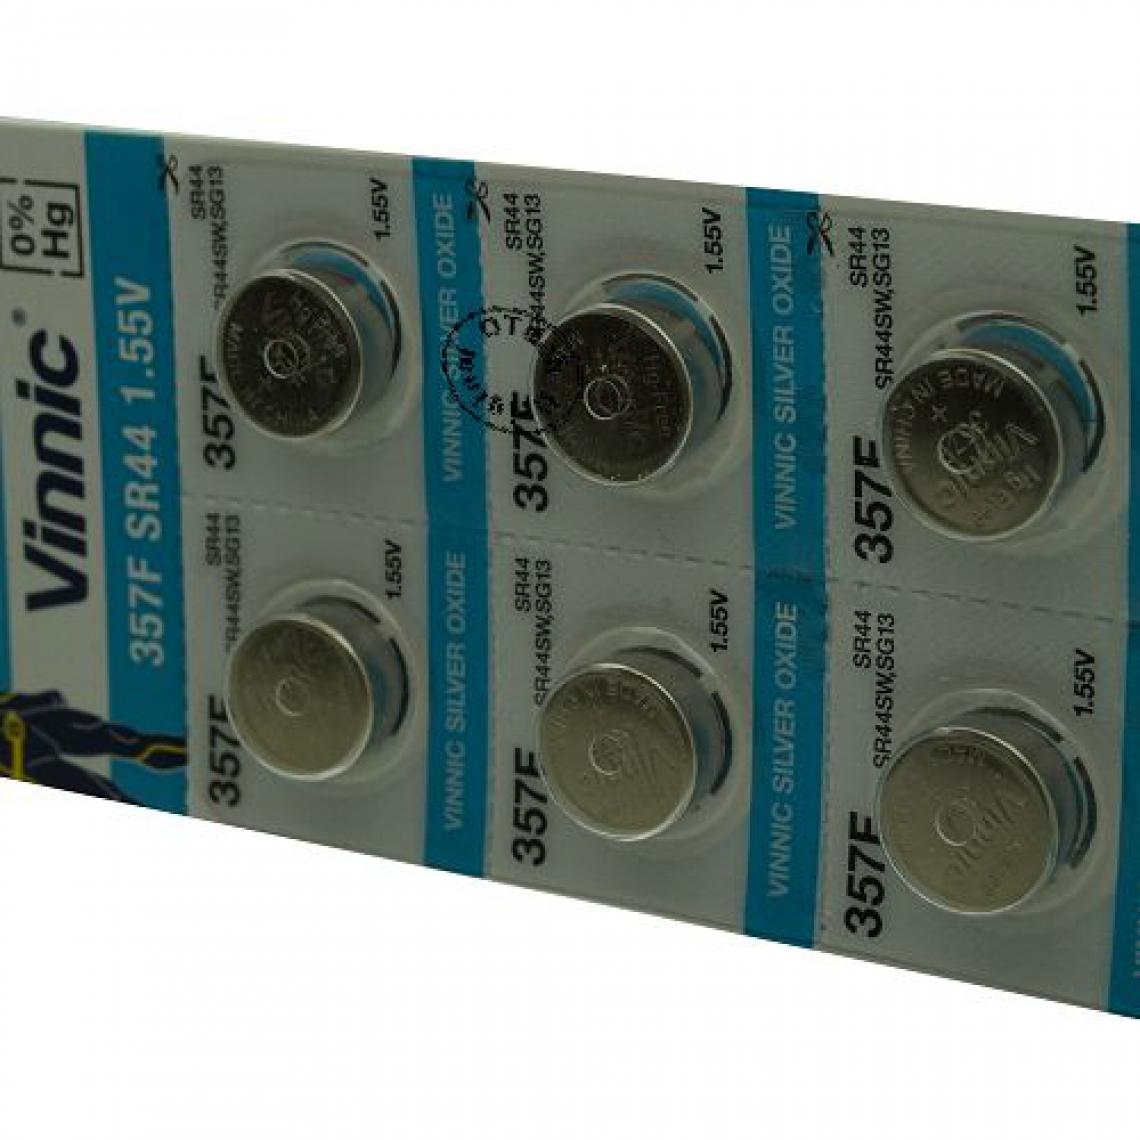 Otech - Pack de 10 piles Vinnic pour DIVERS SG13 - Piles rechargeables